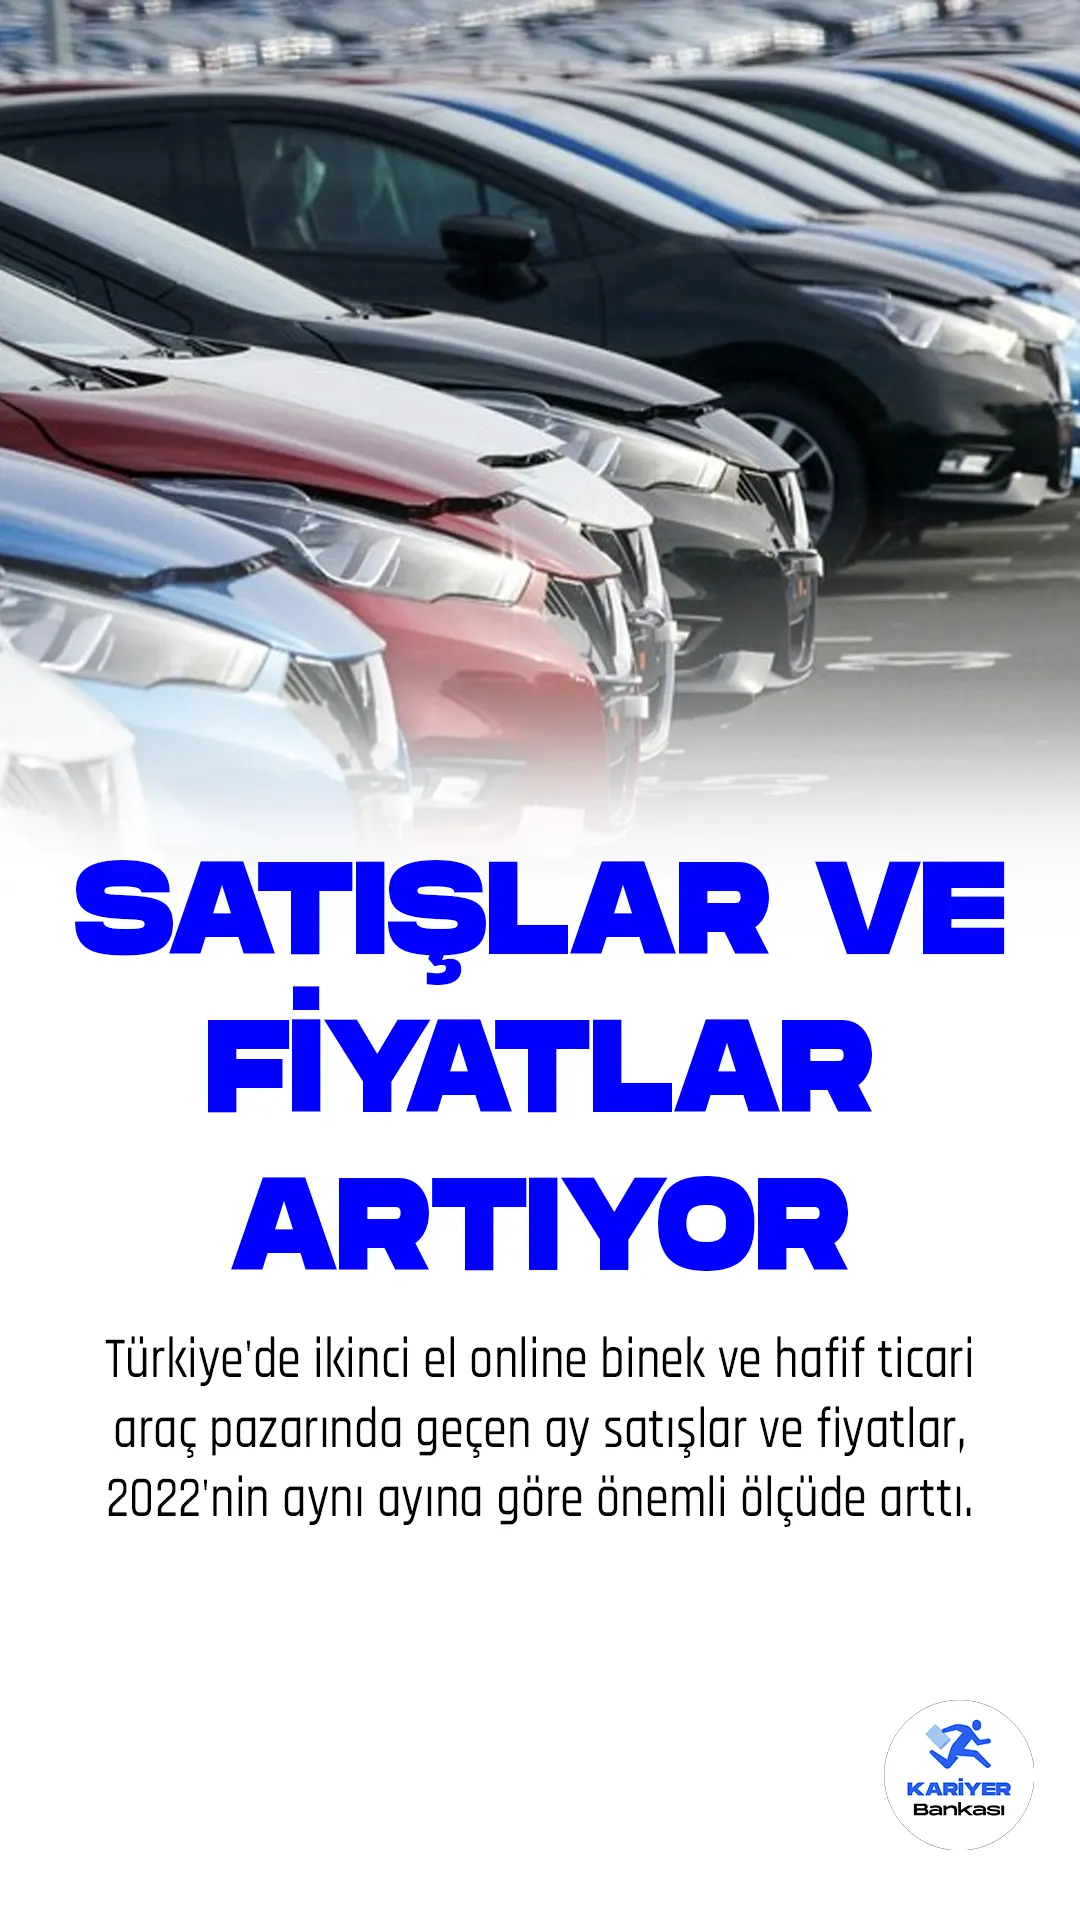 Türkiye'de ikinci el online binek ve hafif ticari araç pazarında geçen ay satışlar ve fiyatlar, 2022'nin aynı ayına göre önemli ölçüde arttı.